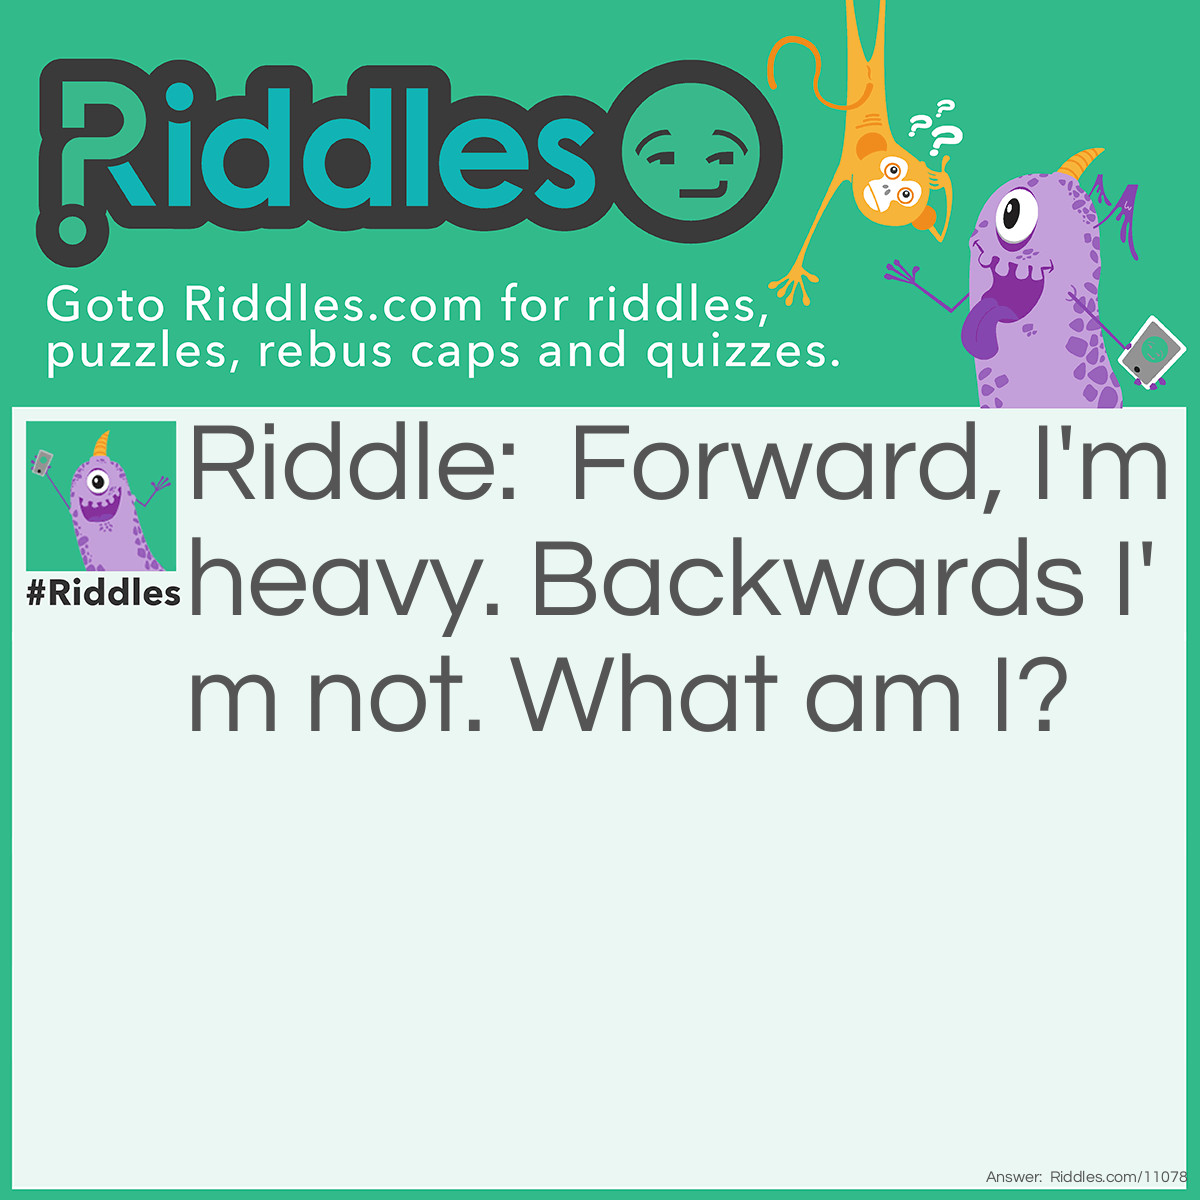 Riddle: Forward, I'm heavy. Backwards I'm not. What am I? Answer: Ton.